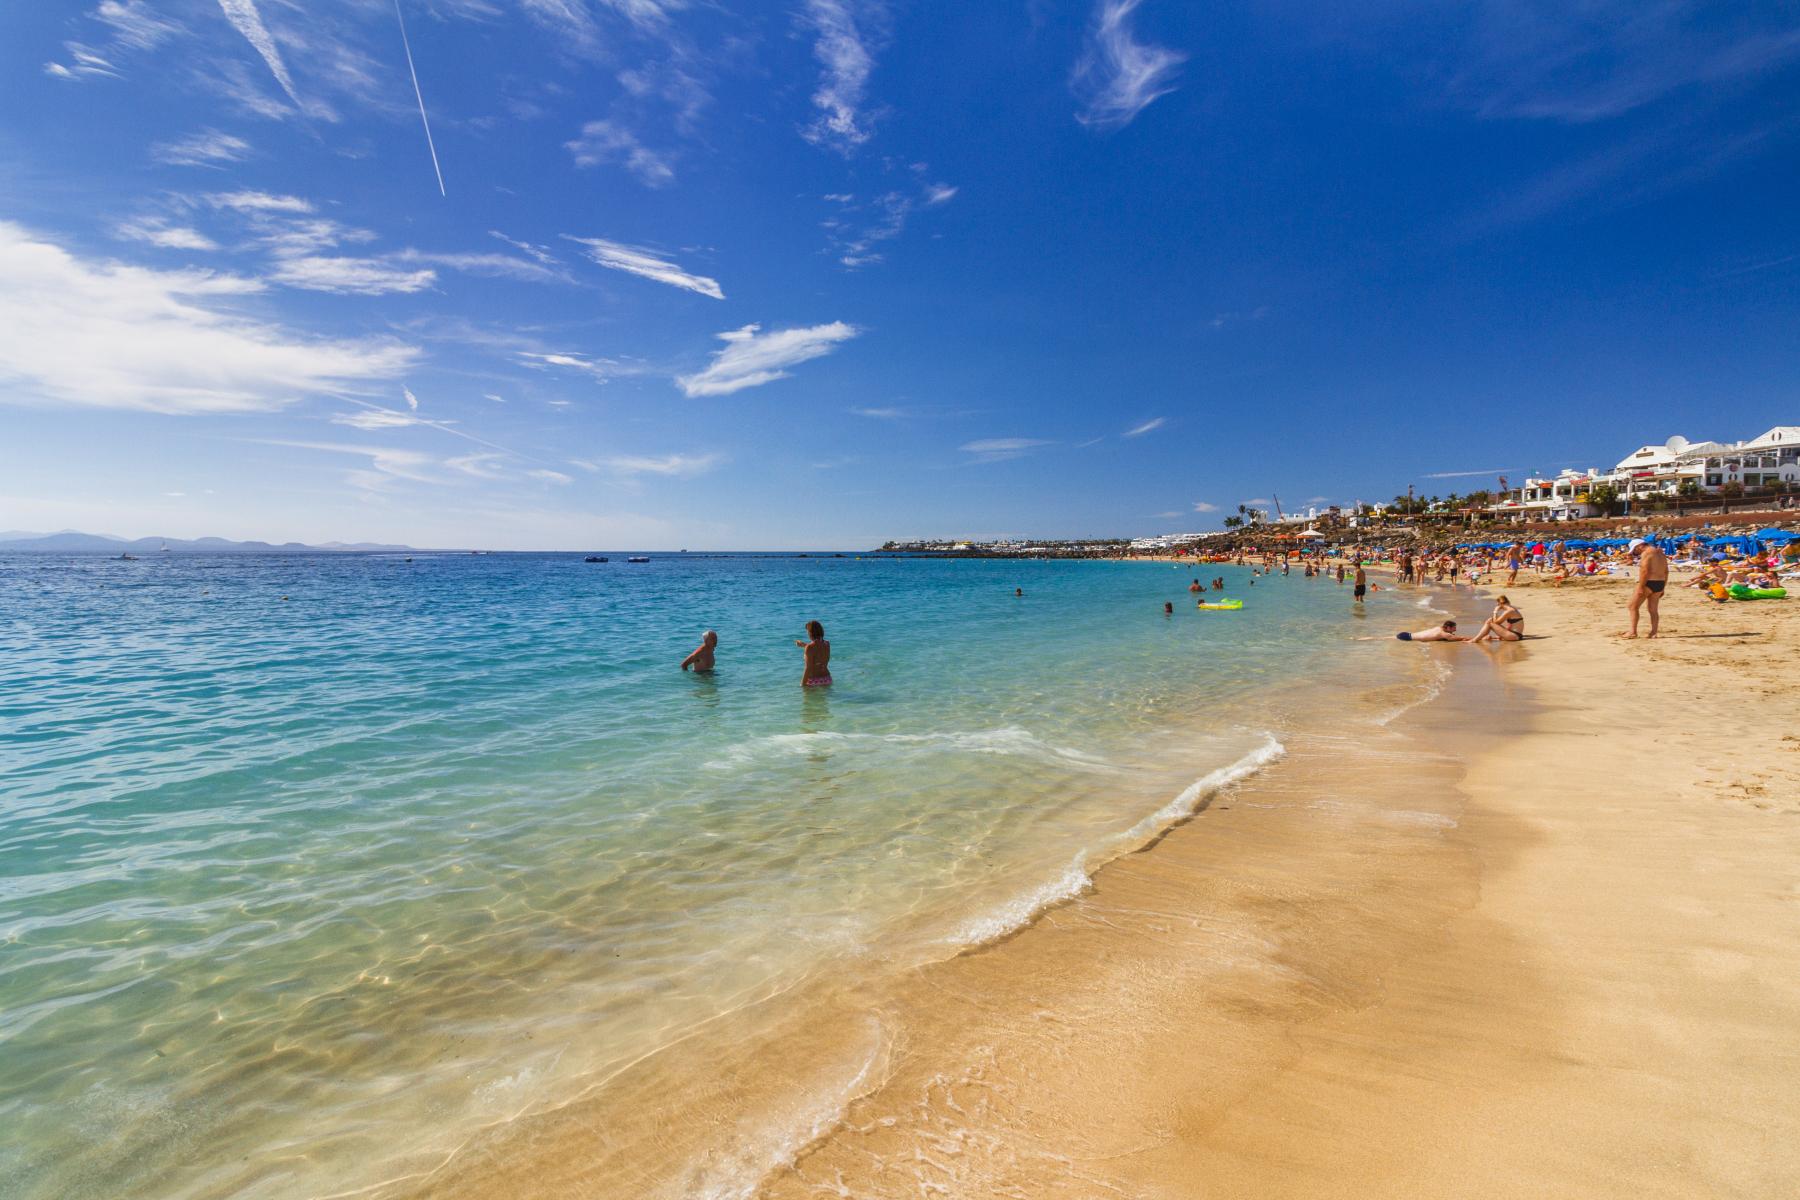 Preskúmajte nádhernú a zábavnú pláž Playa Dorada na Lanzarote